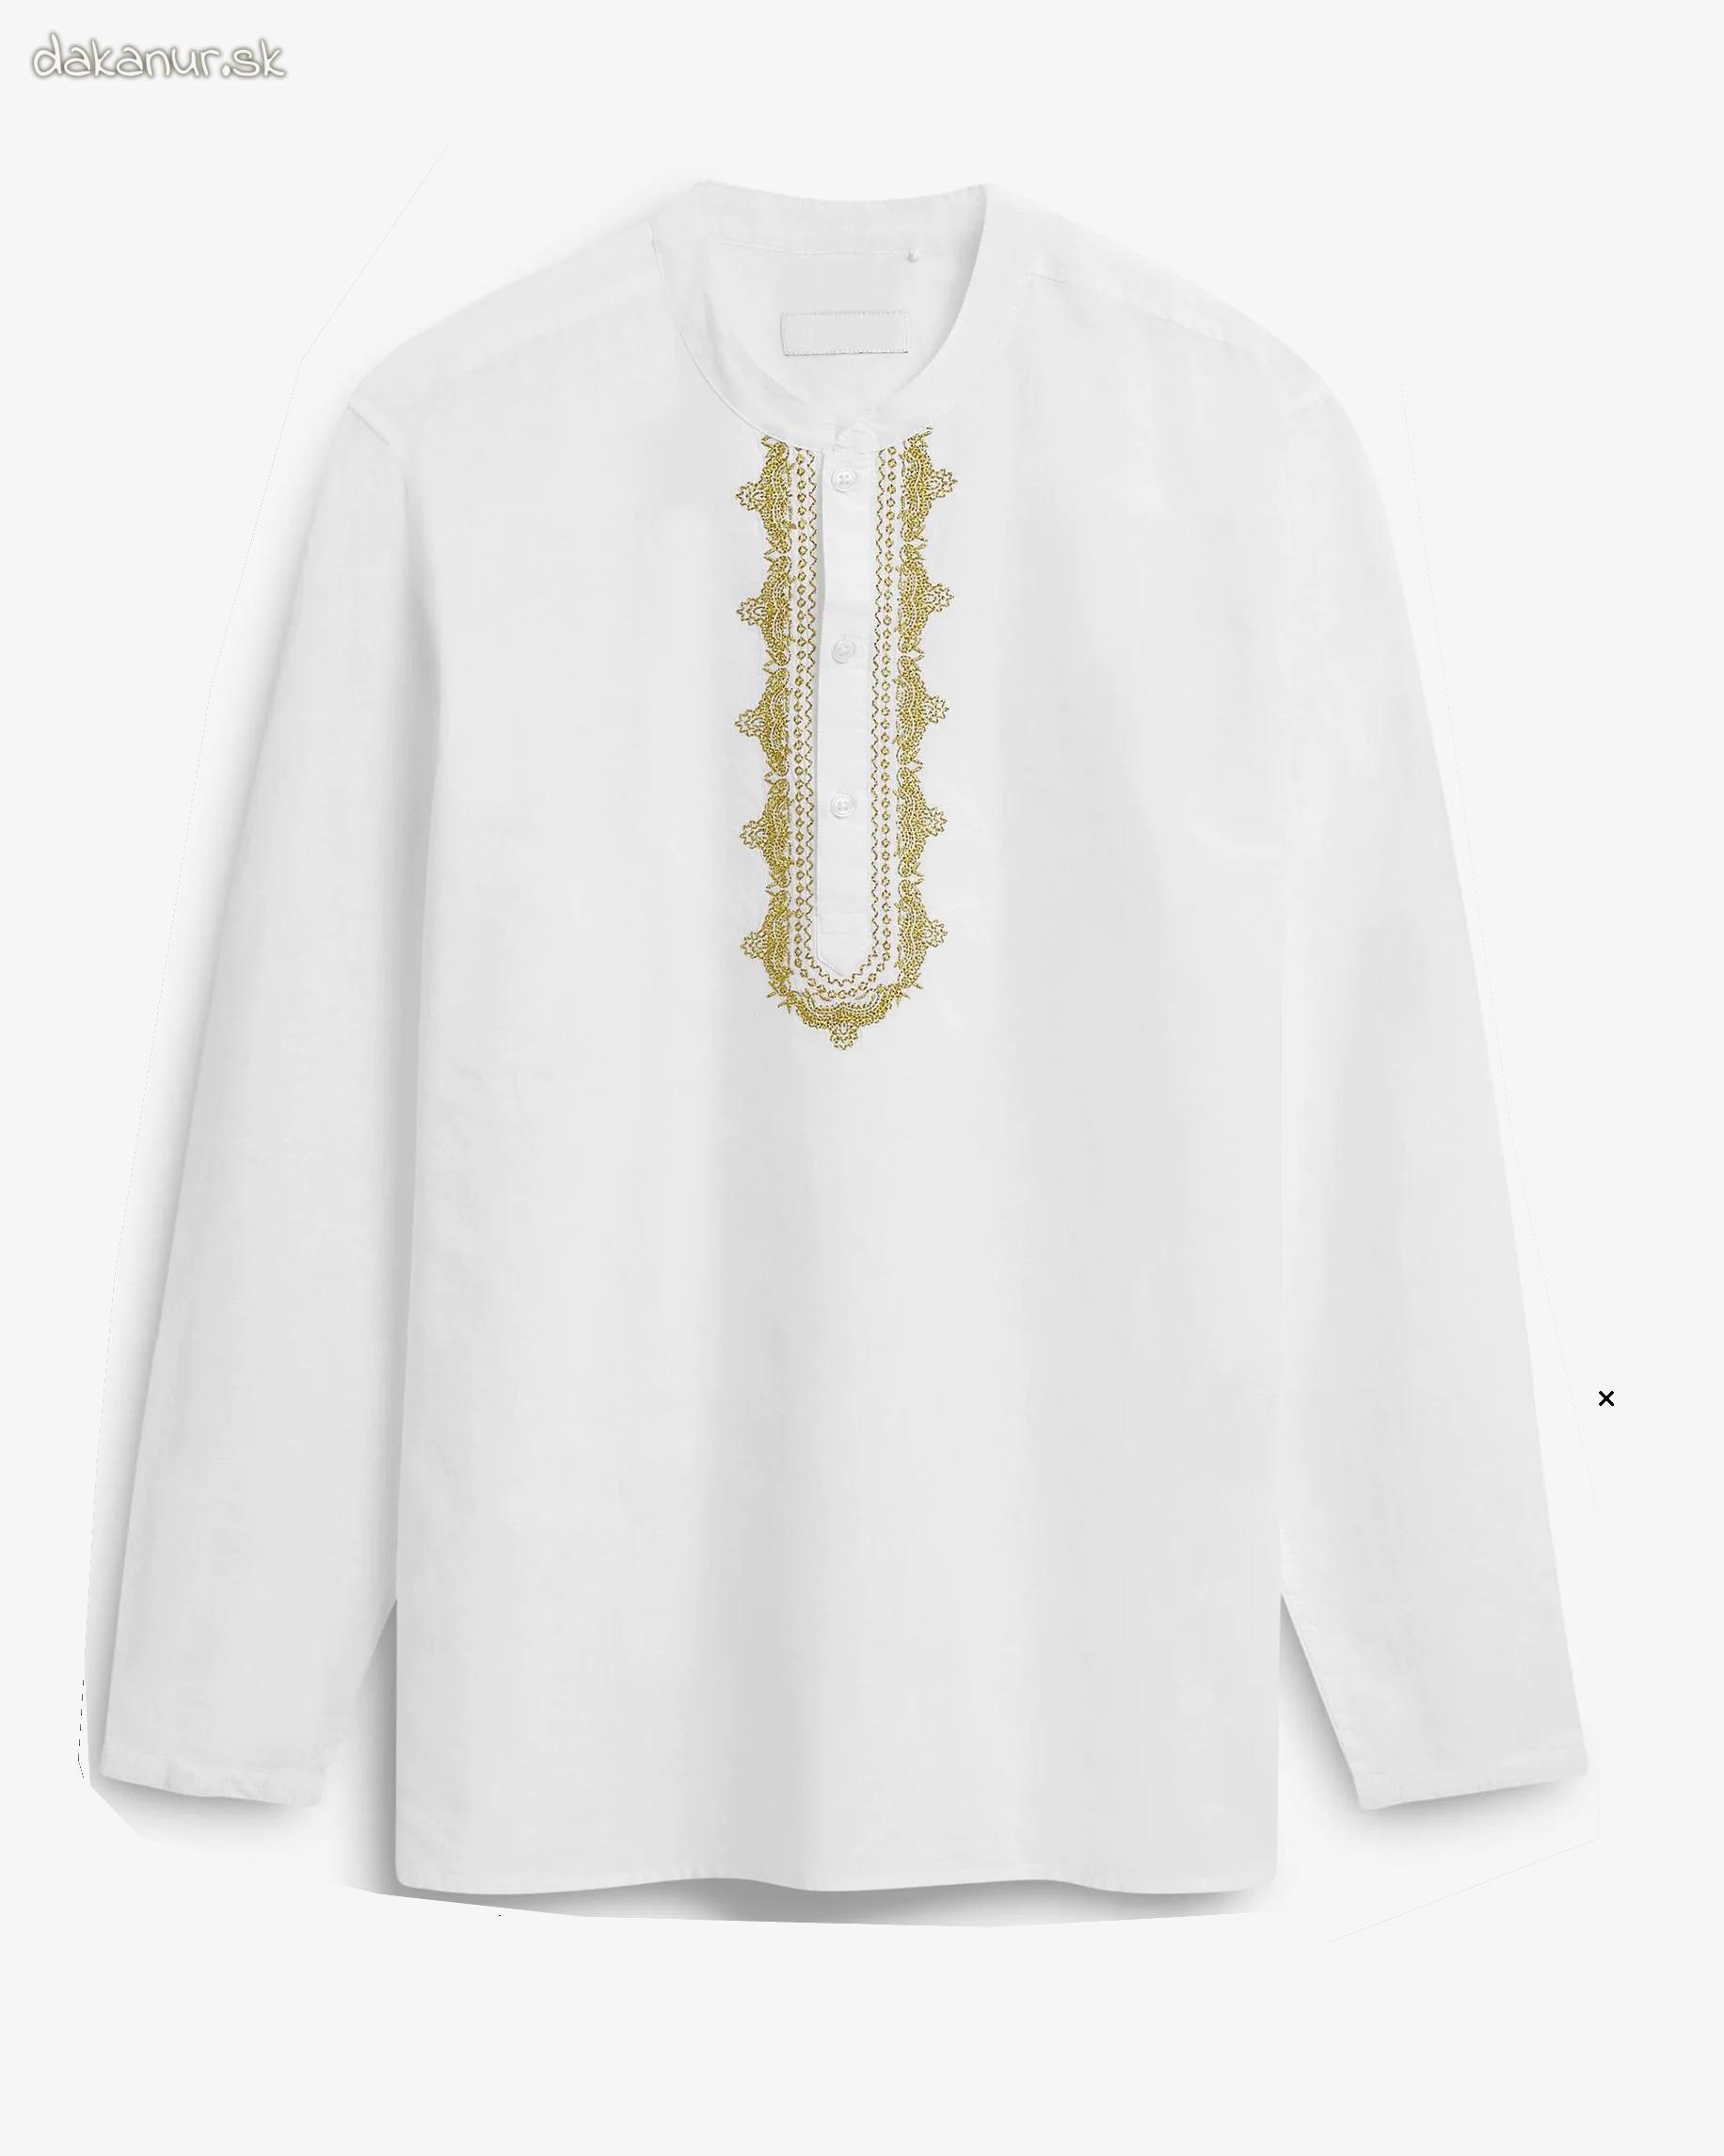 Biela vyšívaná bavlnená kurta, jubba, thobe orient